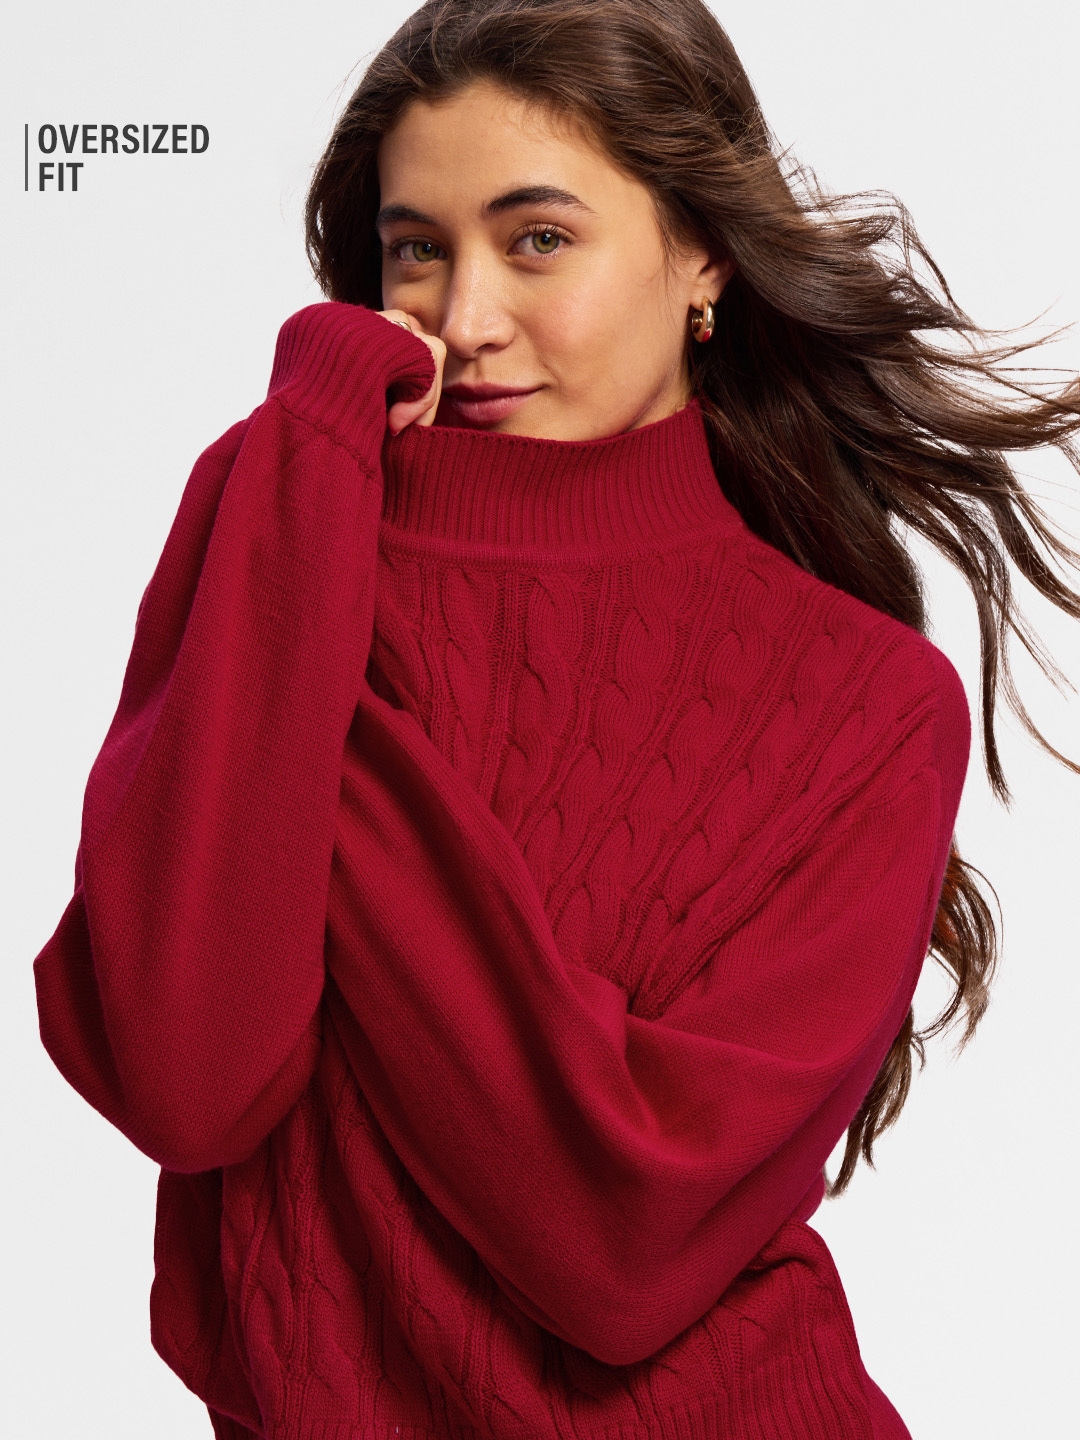 Women's Solids: Poppy Red Women's Oversized Sweaters